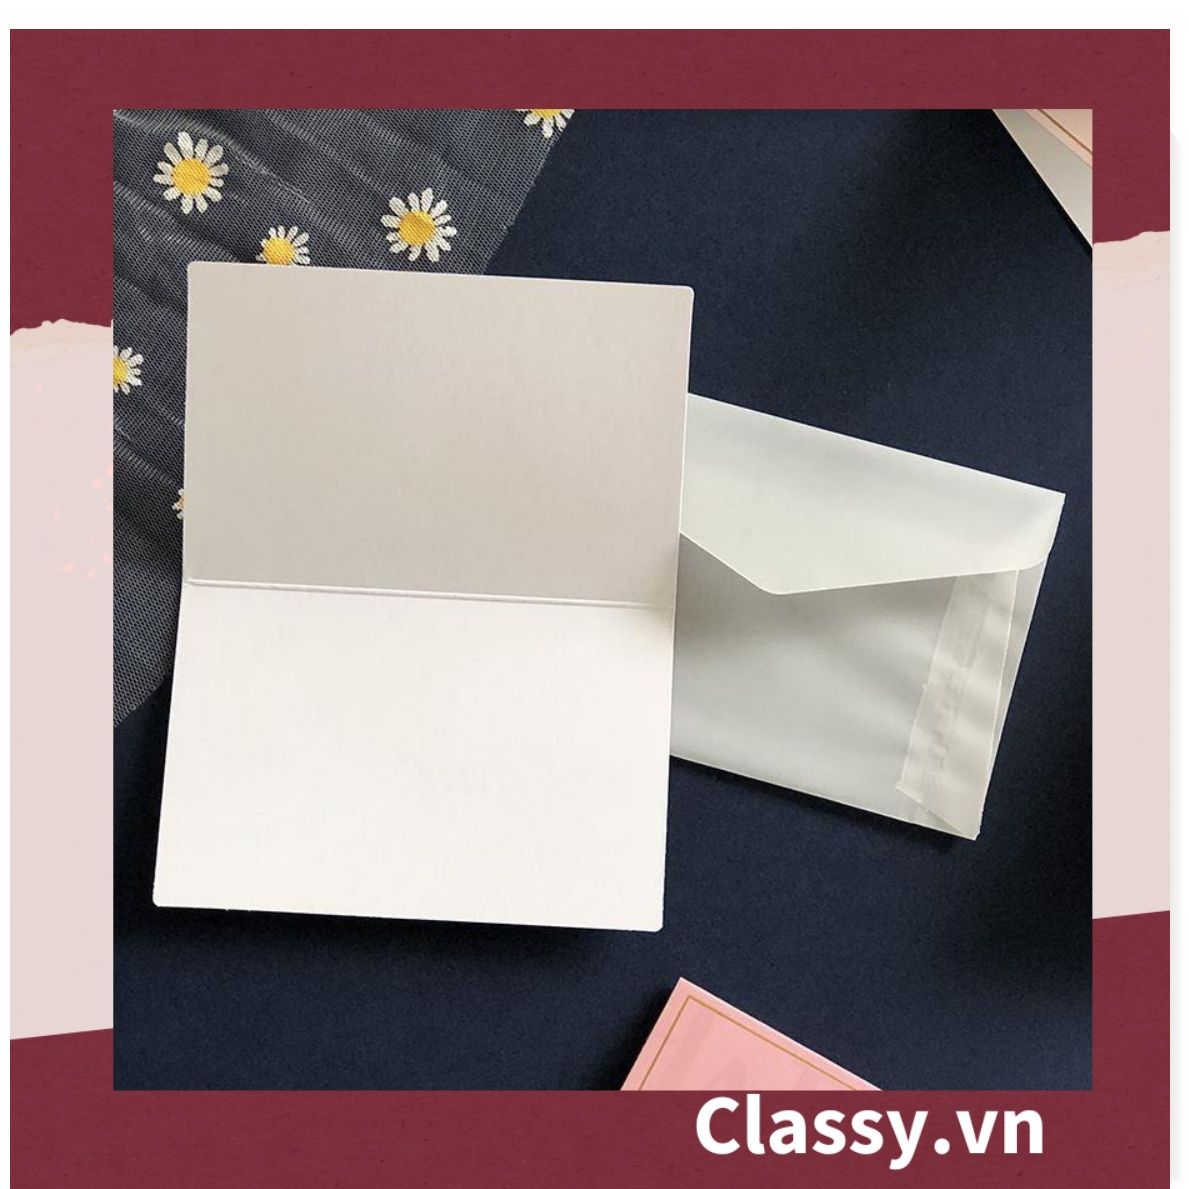  Thiệp Cổ điển Vintage tối giản, giấy art sang trọng kèm phong bì giấy lụa trong suốt và nhãn dán sticker Q679 